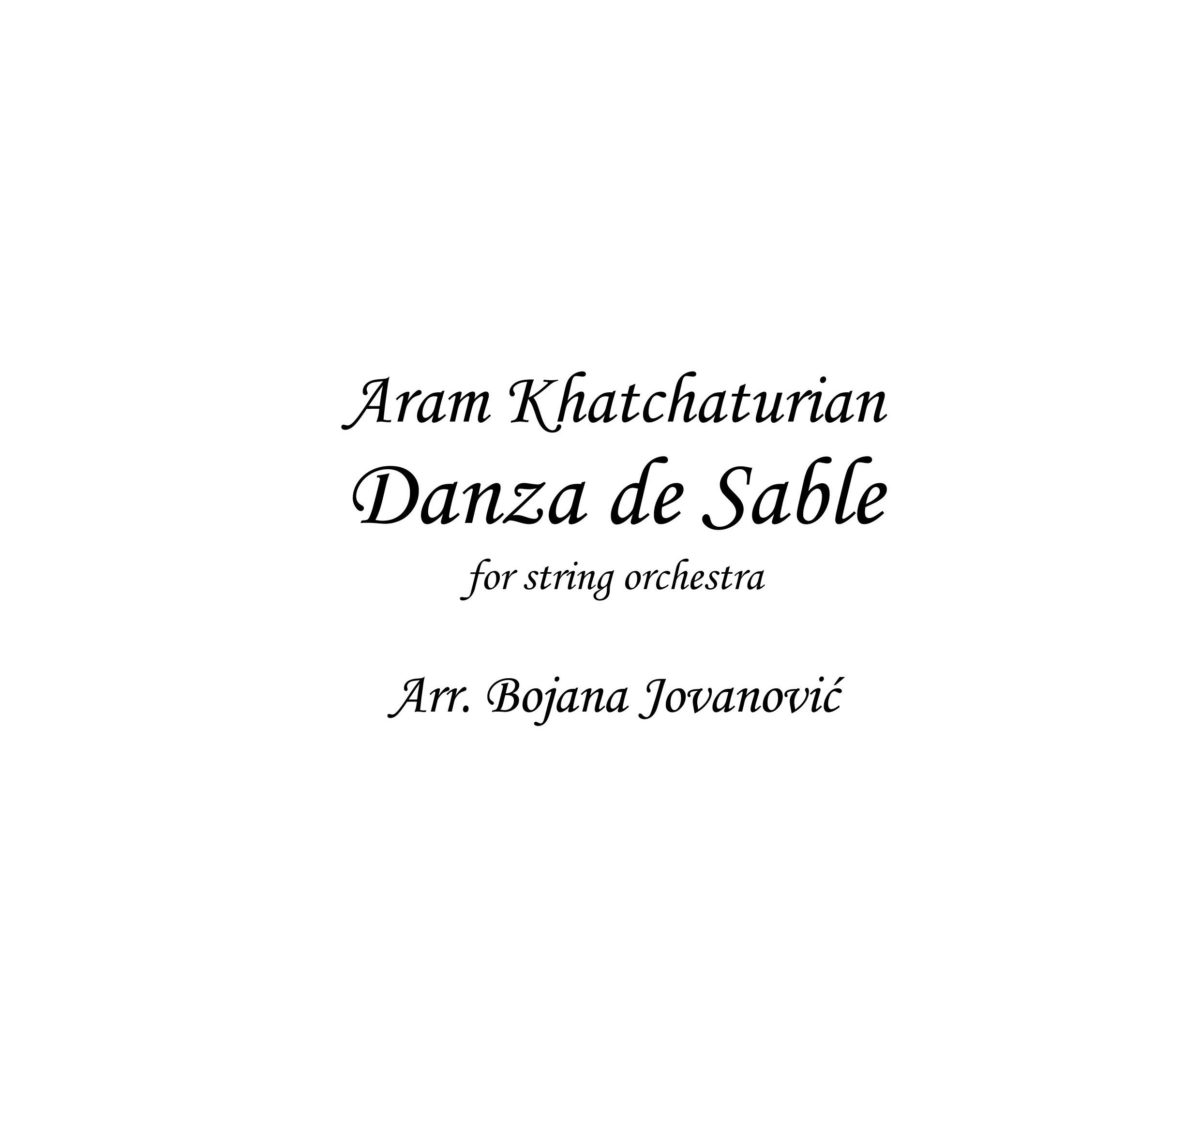 Danza de Sable (A Khatchaturian) - Sheet Music